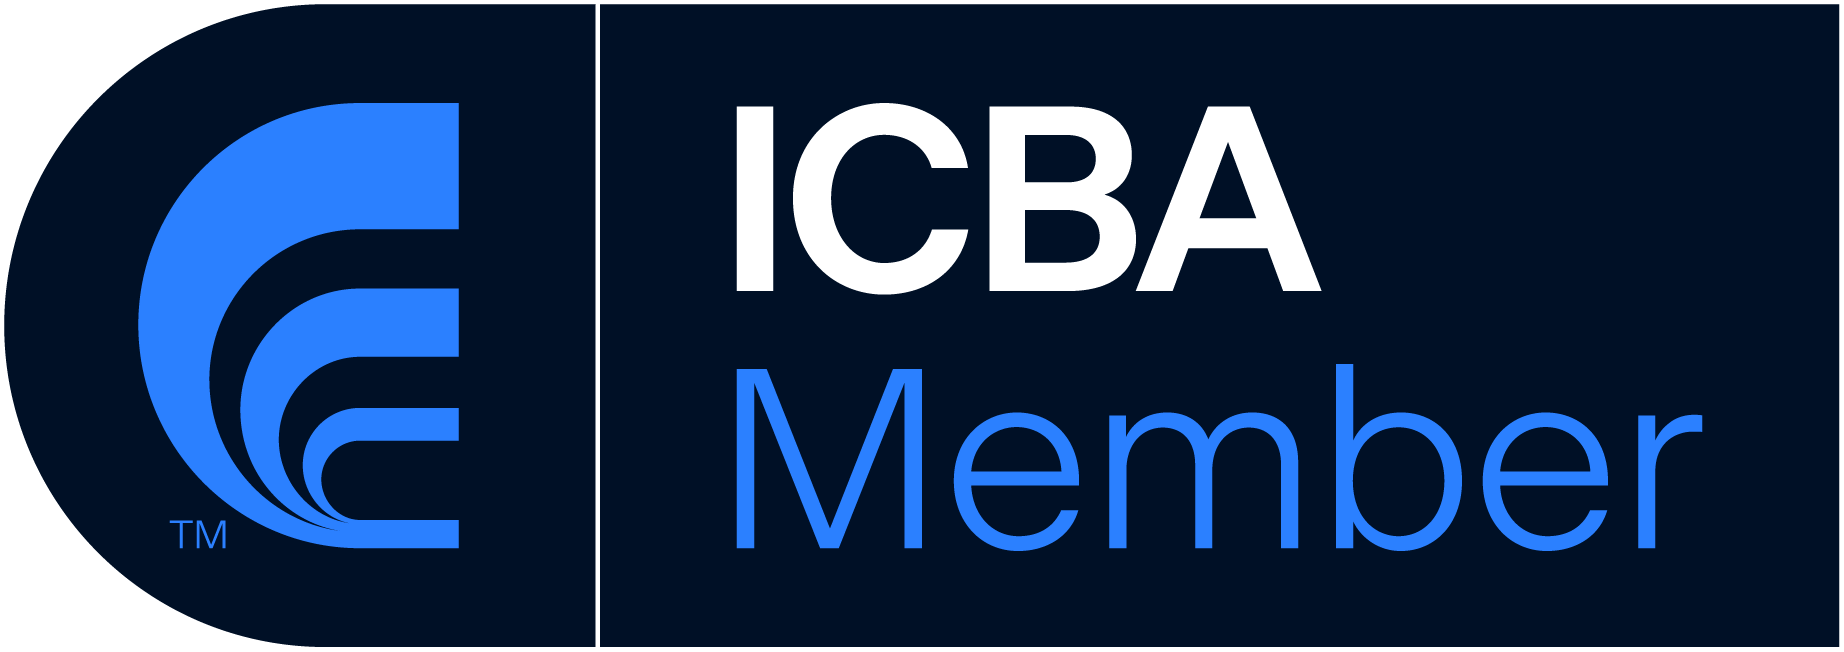 ICBA Member